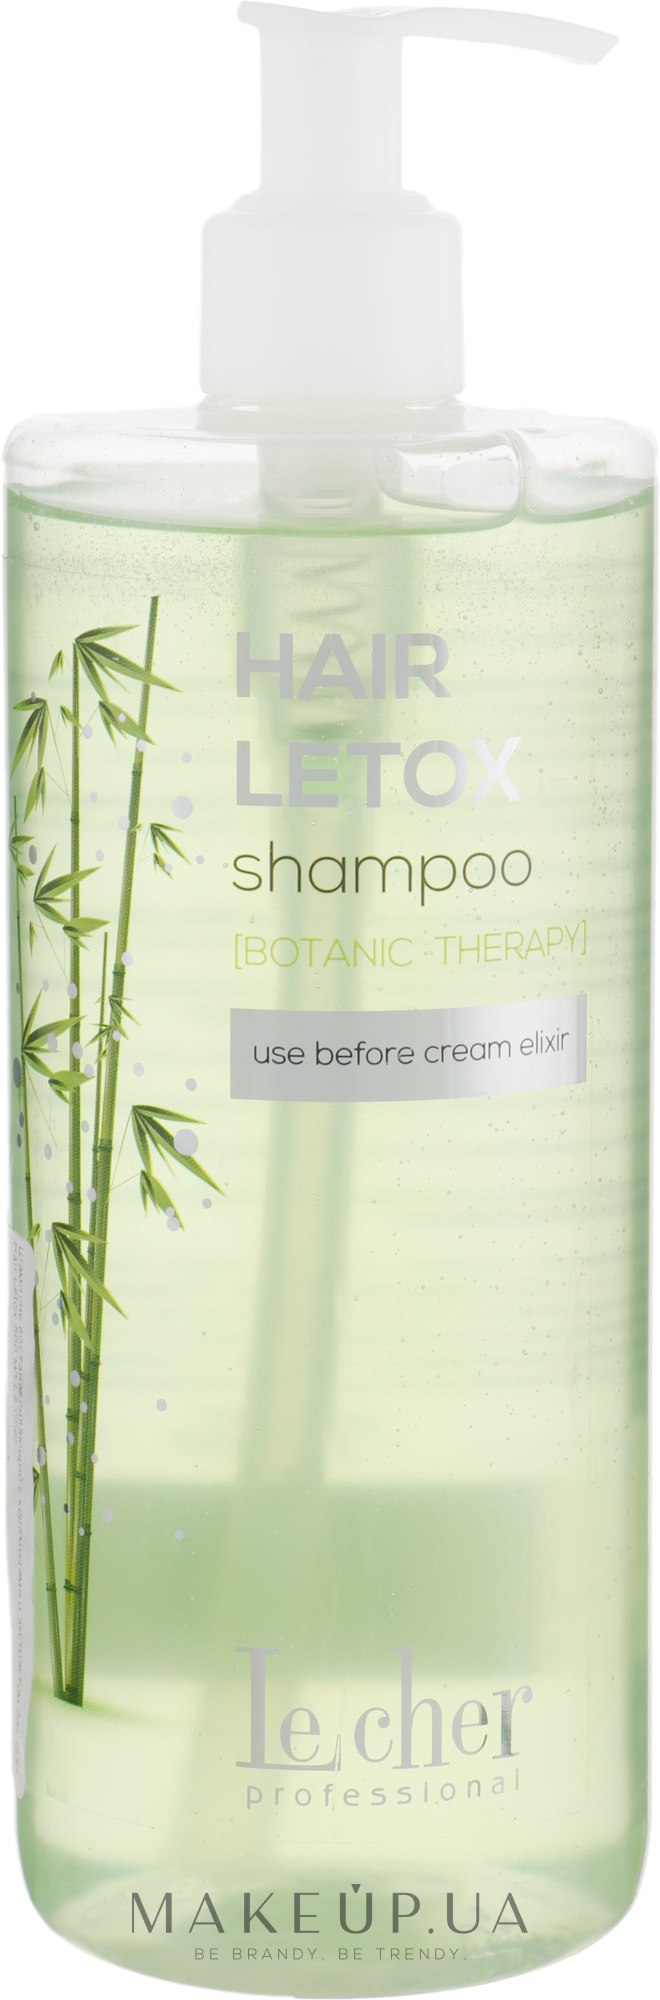 Шампунь восстанавливающий с керамидами и экстрактом бамбука - Lecher Hair Letox Shampoo — фото 500ml